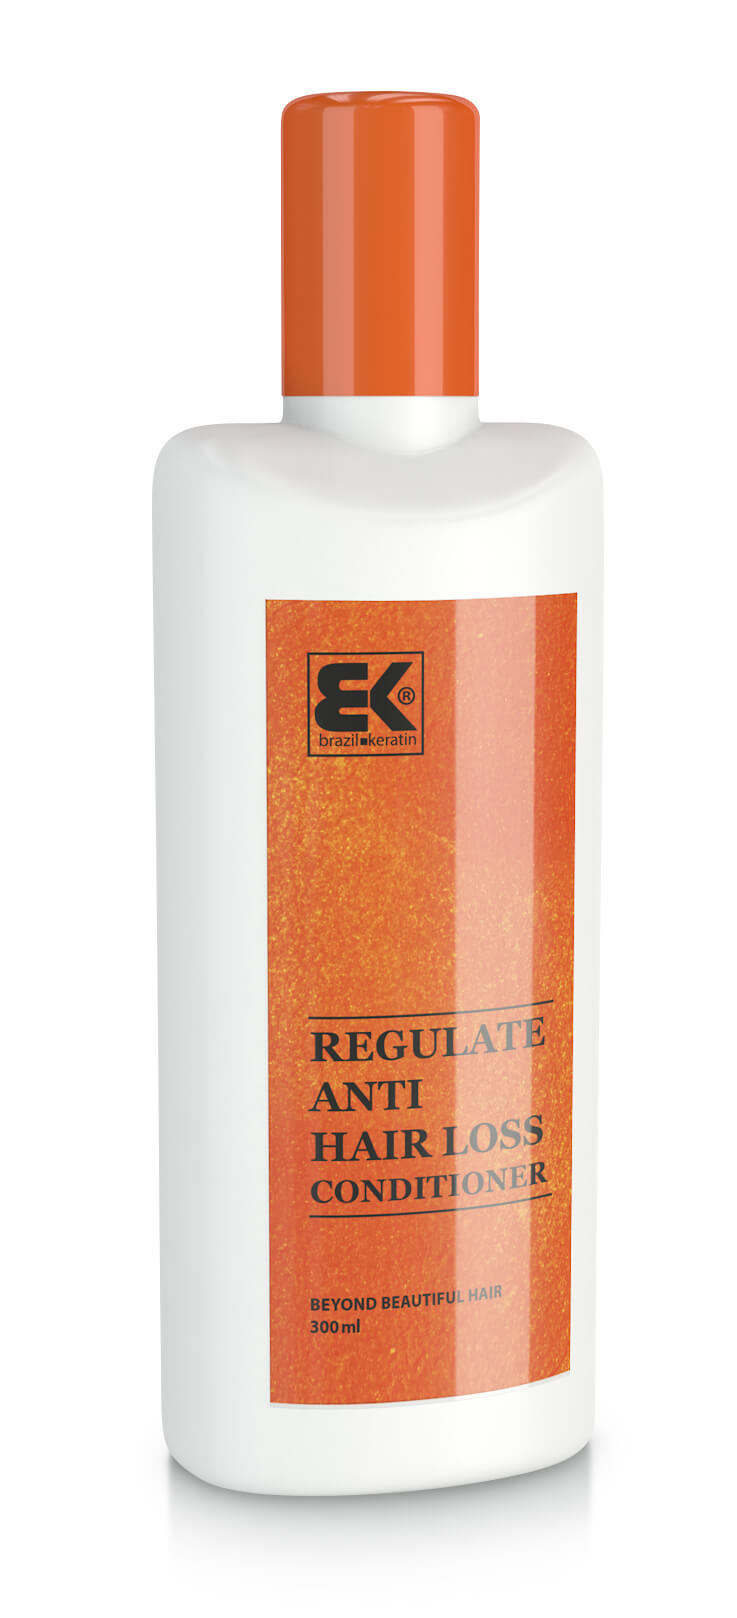 Kondicionér s keratinem proti vypadávání vlasů (Regulate Anti Hair Loss Conditioner) 300 ml